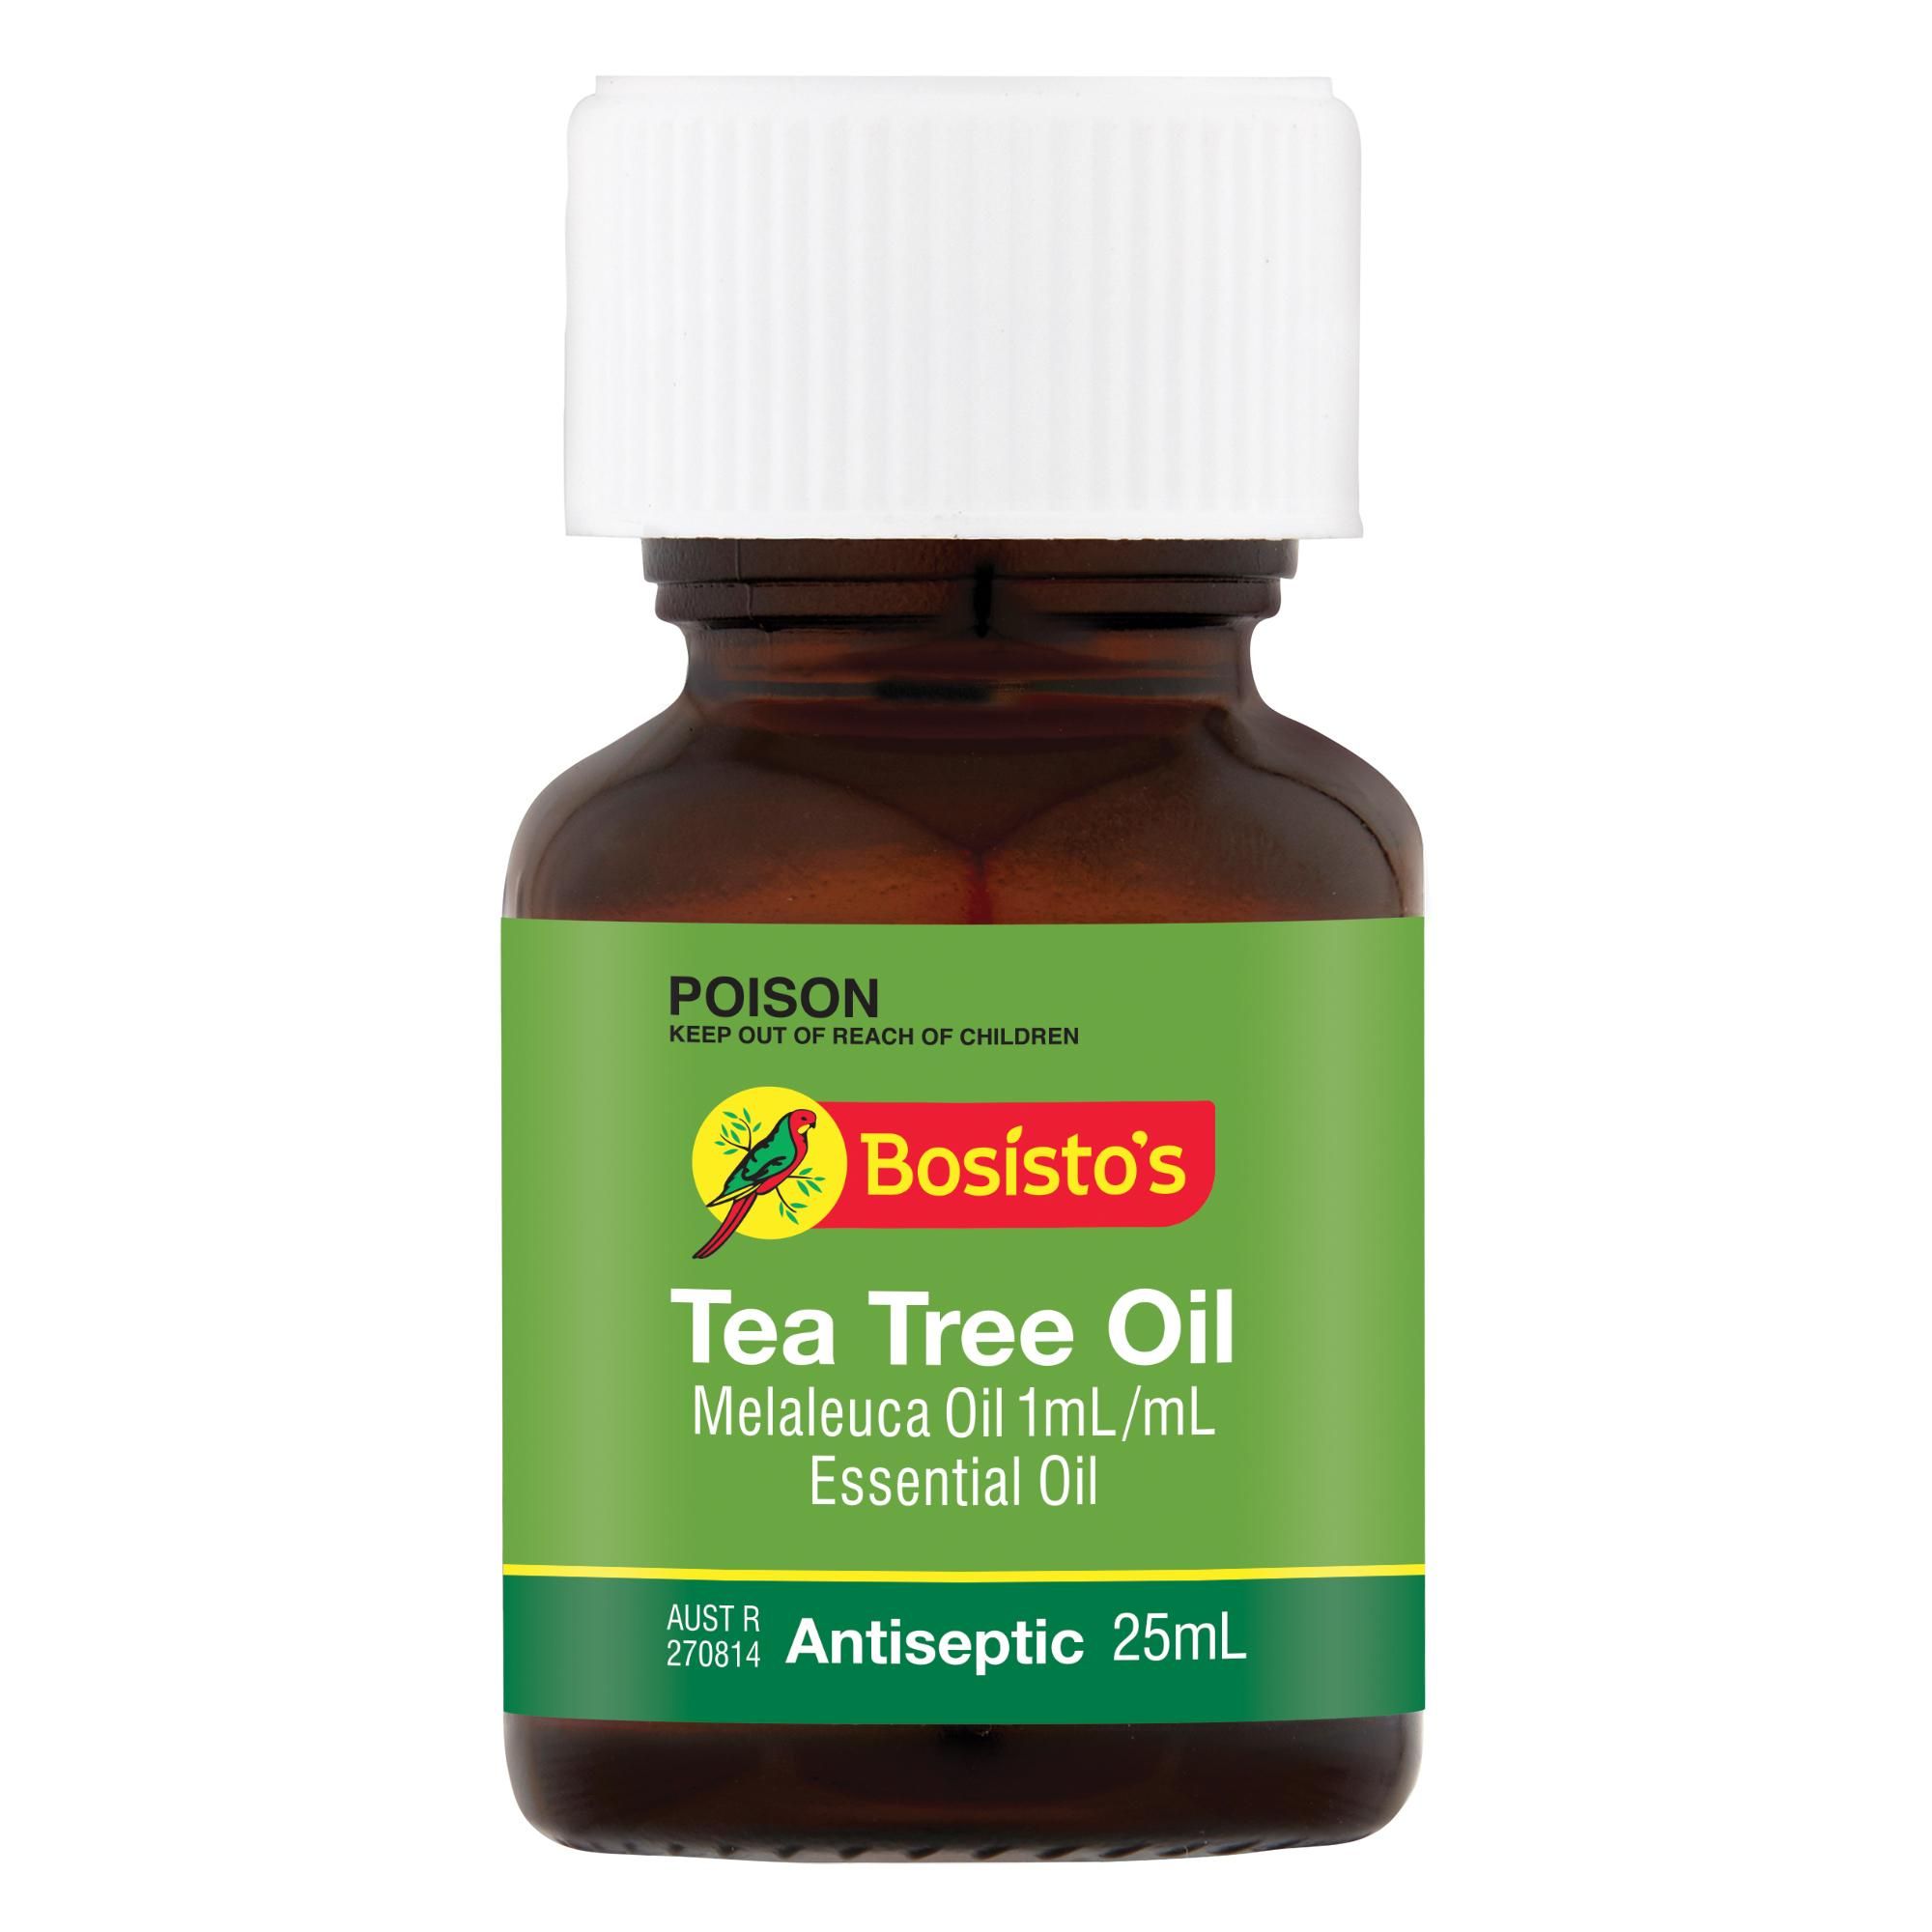 Bosisto's Tea Tree Oil 25mL